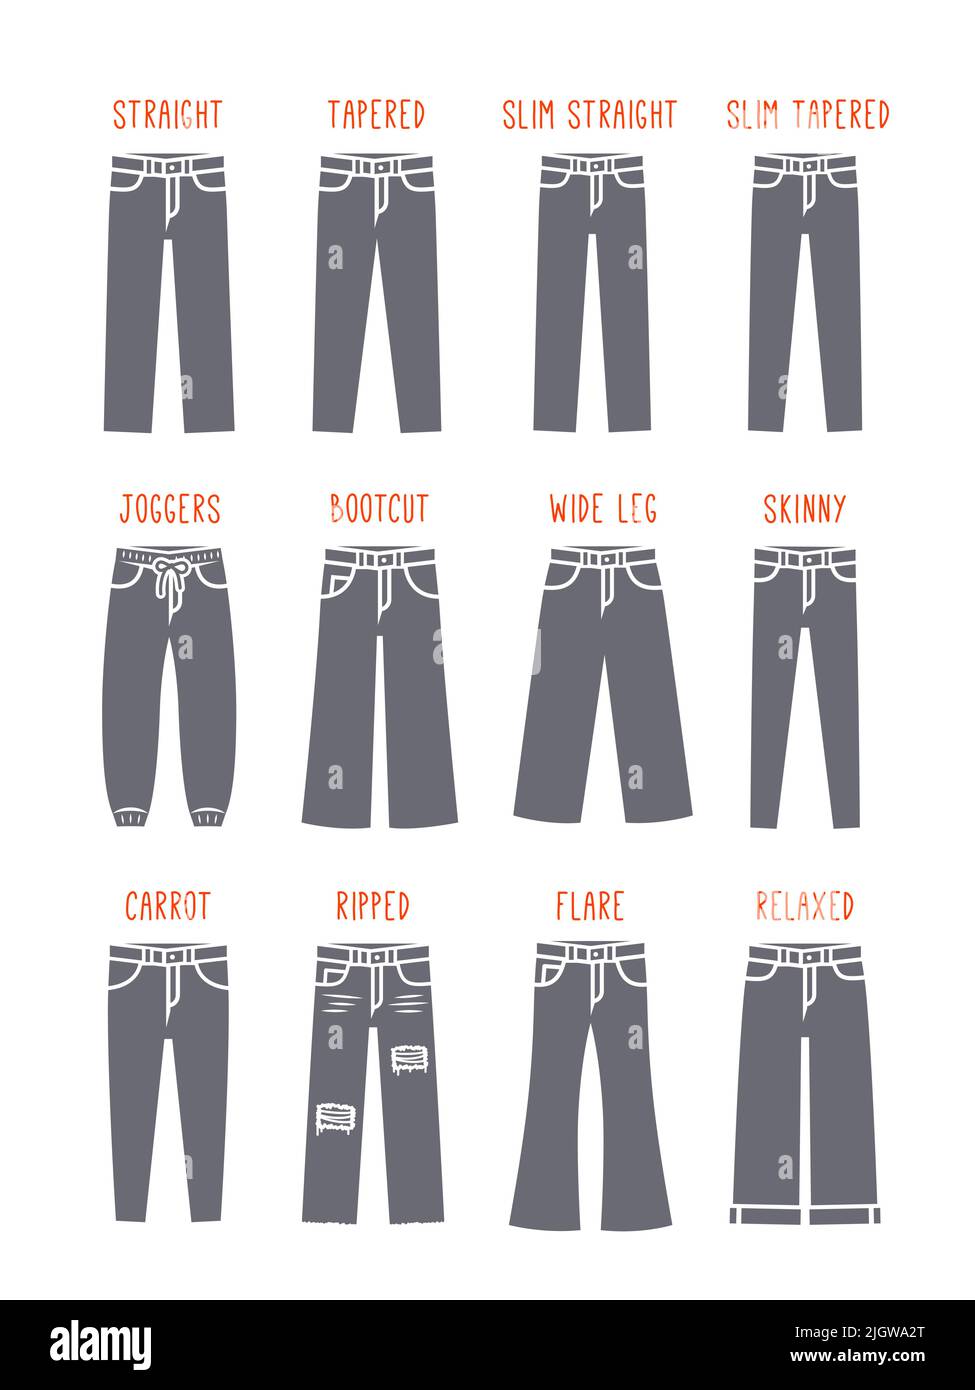 Skinny jeans man Banque d'images vectorielles - Alamy